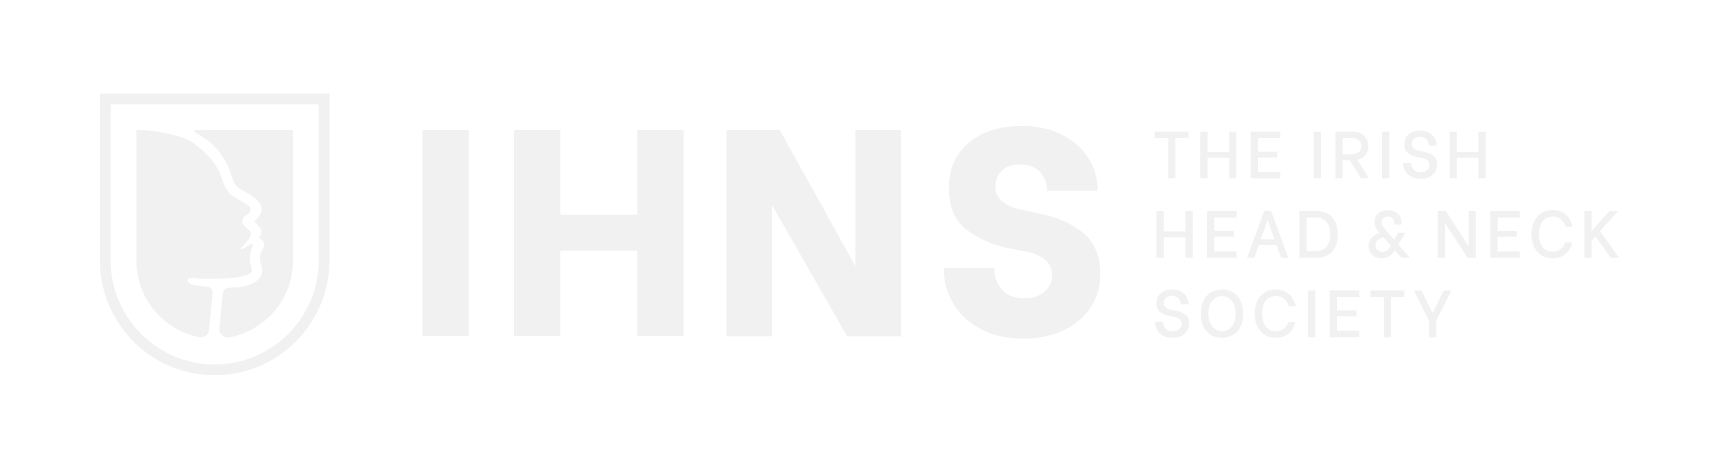 ihns logo